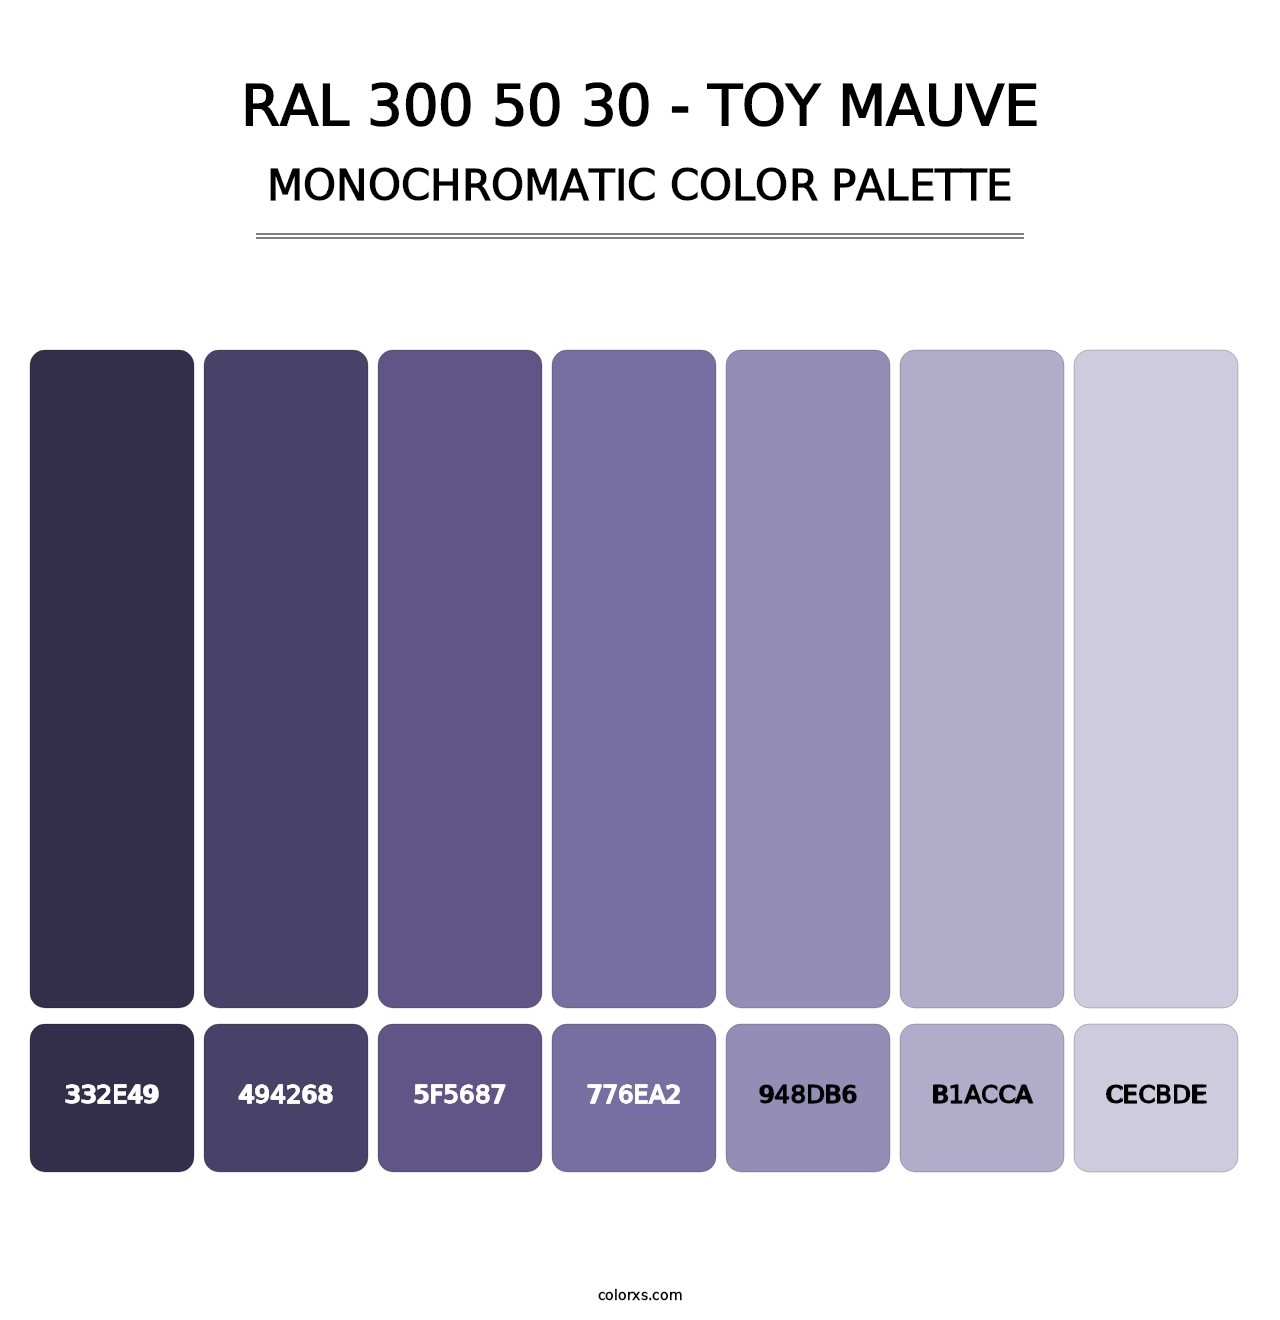 RAL 300 50 30 - Toy Mauve - Monochromatic Color Palette